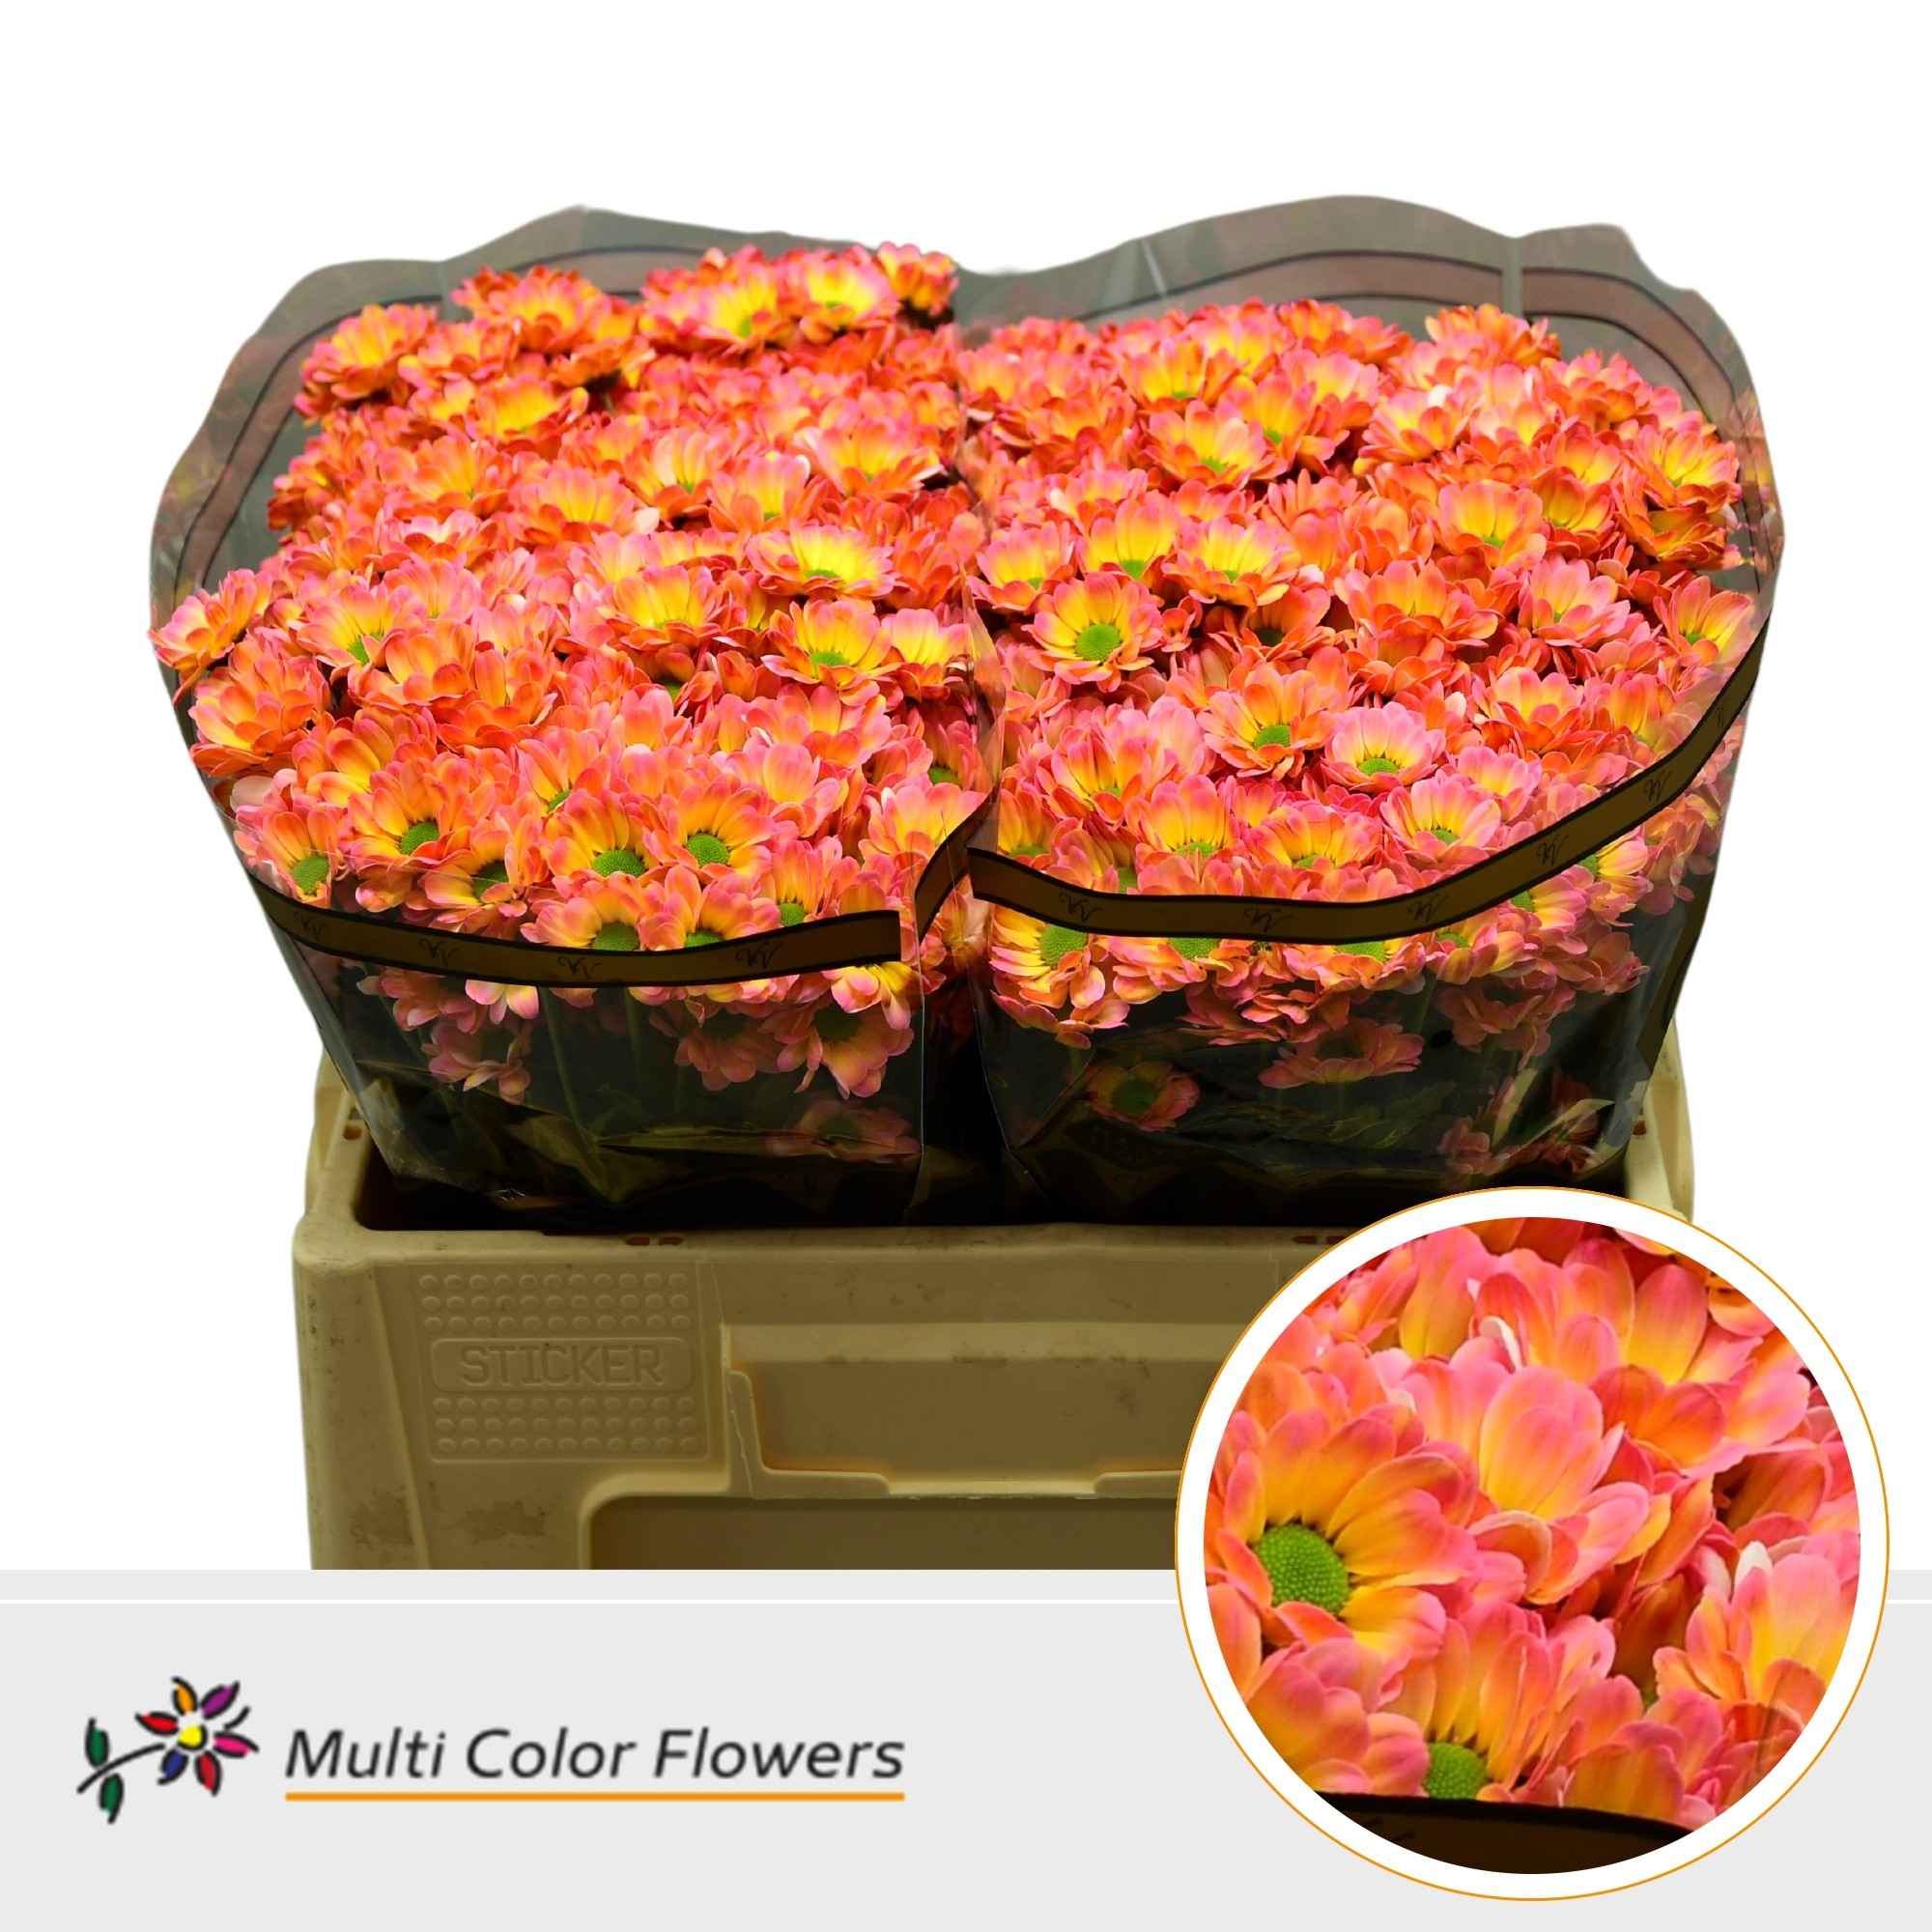 Срезанные цветы оптом Chrys sa paint bowie kakariki от 50шт из Голландии с доставкой по России